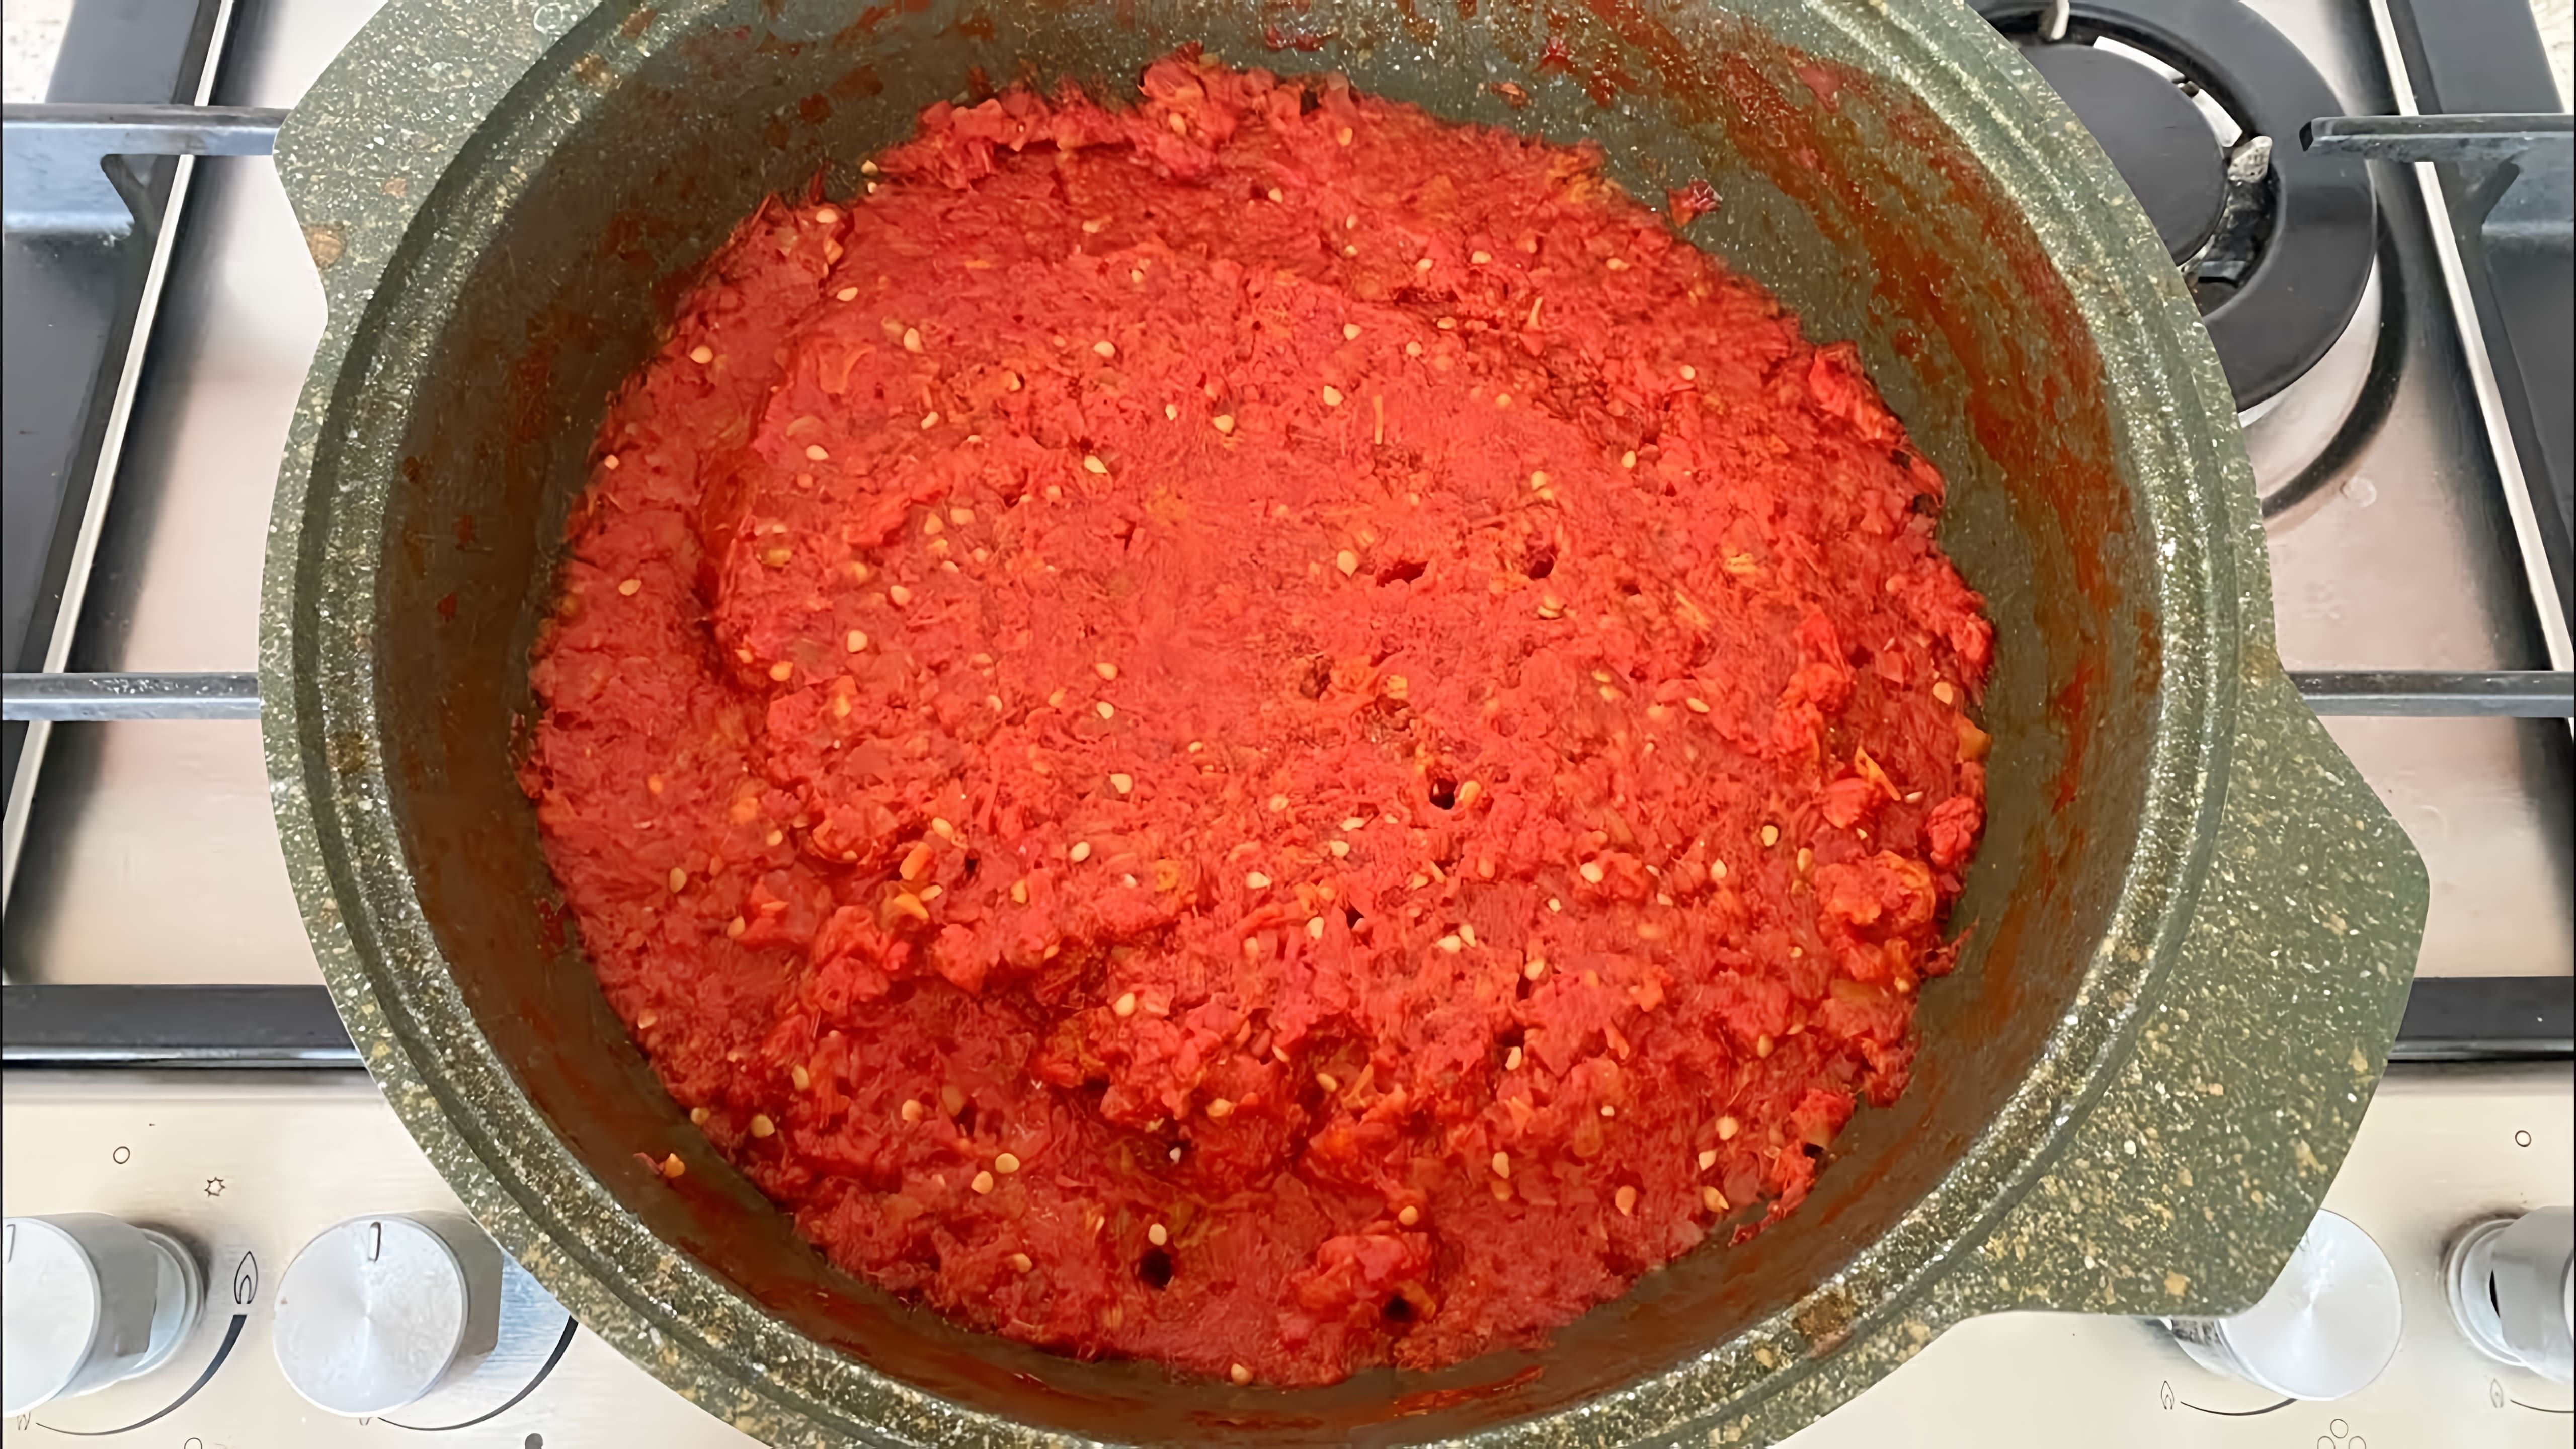 В этом видео демонстрируется рецепт приготовления томатной пасты за 30 минут без долгого упаривания